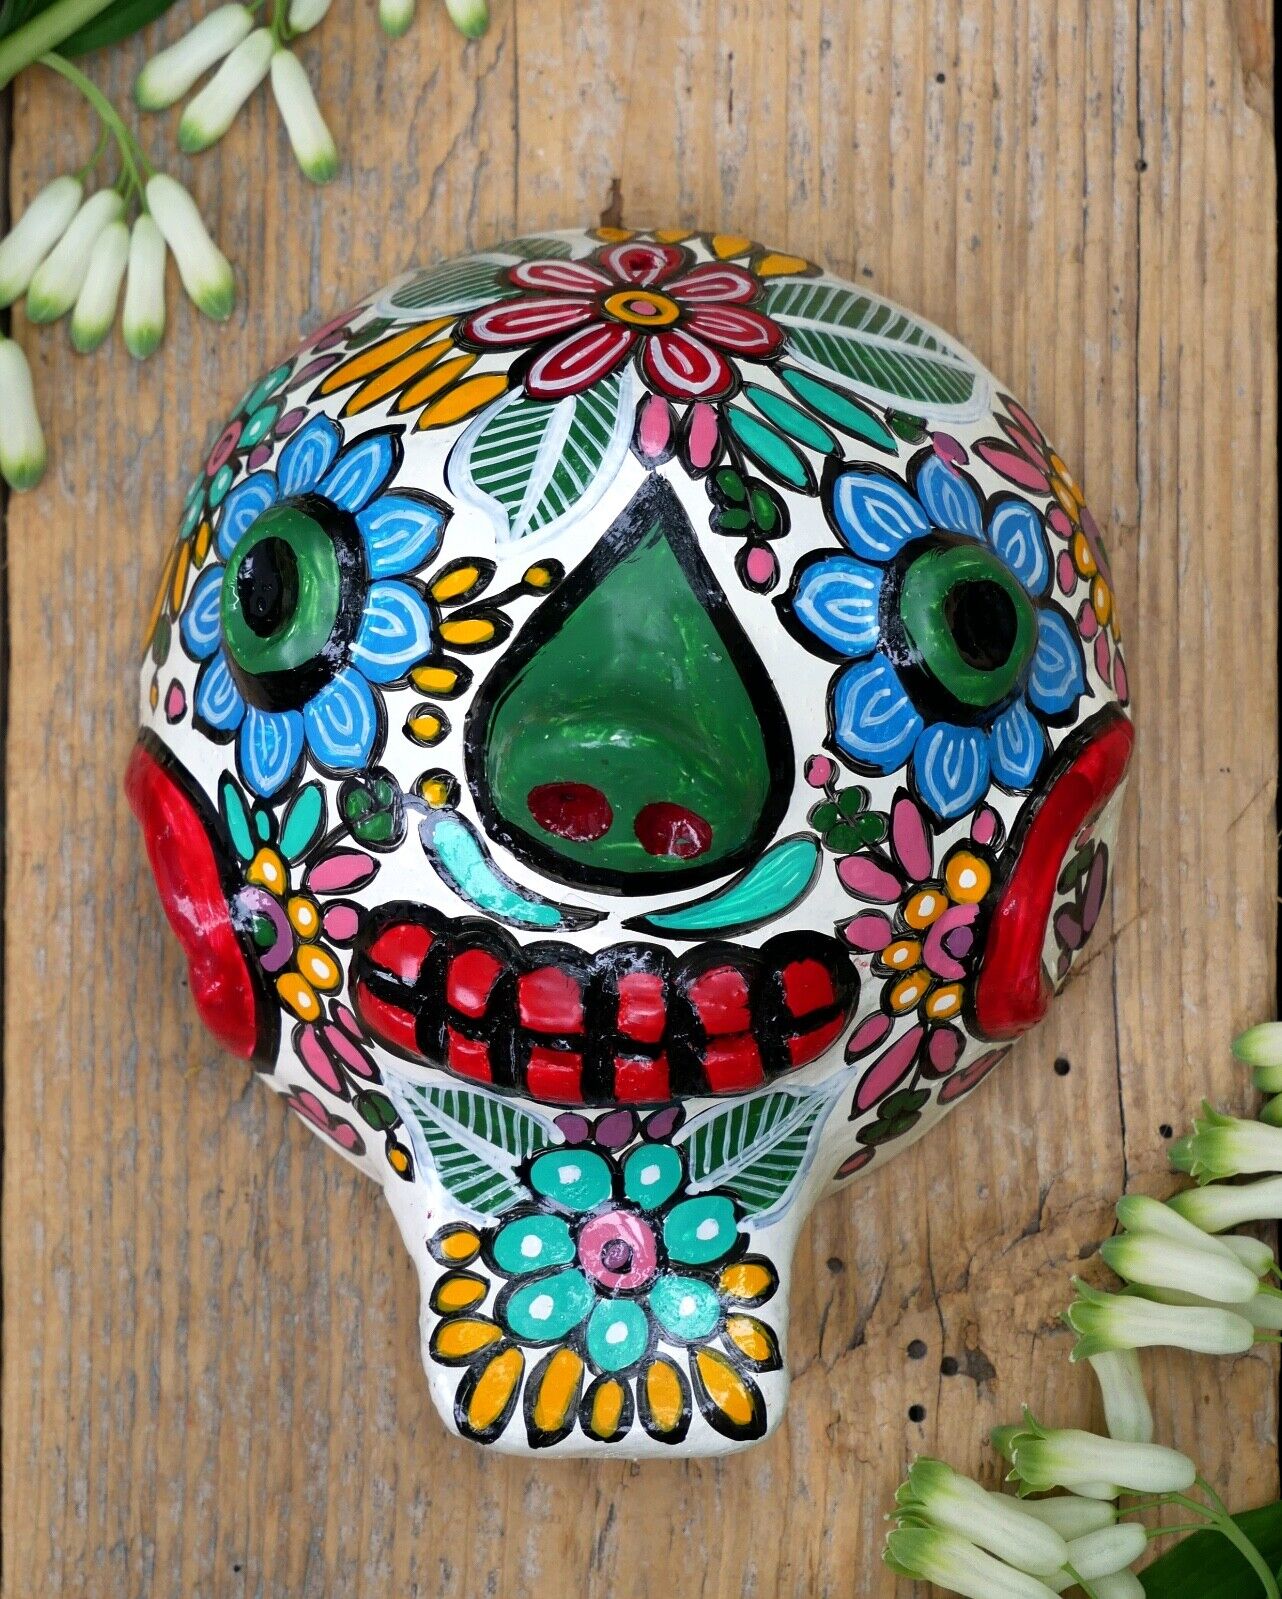 #5 Day of the Dead Sugar Skull Coconut Mask Handmade Guerrero Mexican Folk Art